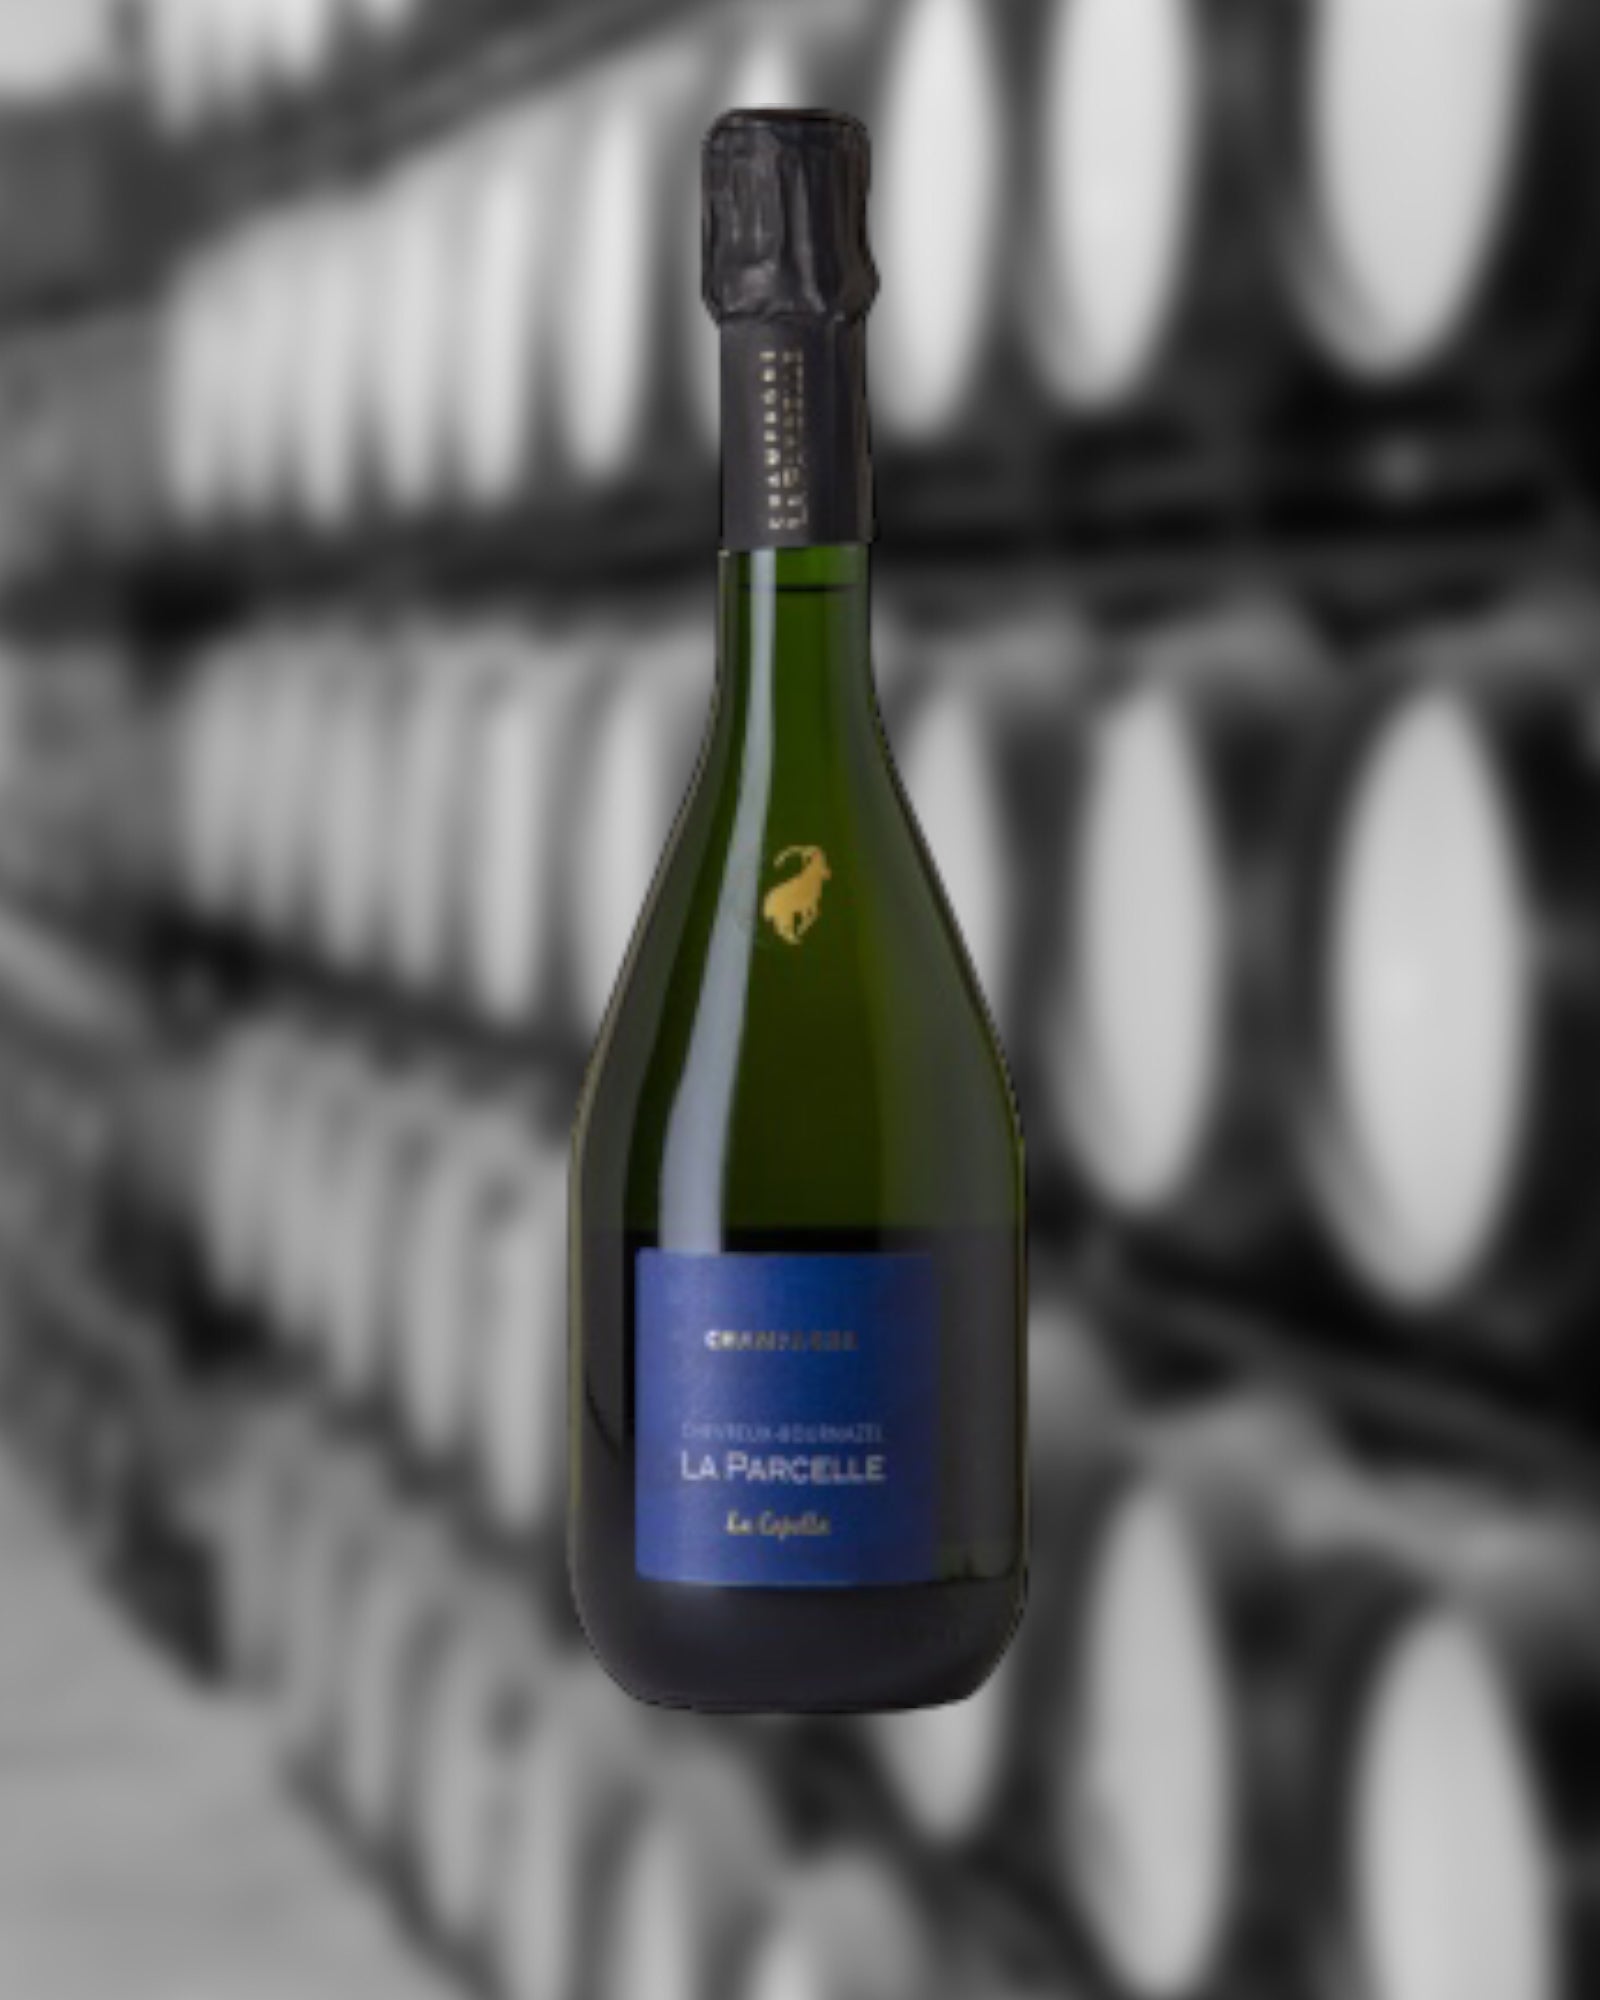 Champagne Chevreux Bournazel - La Parcelle "La Capella"